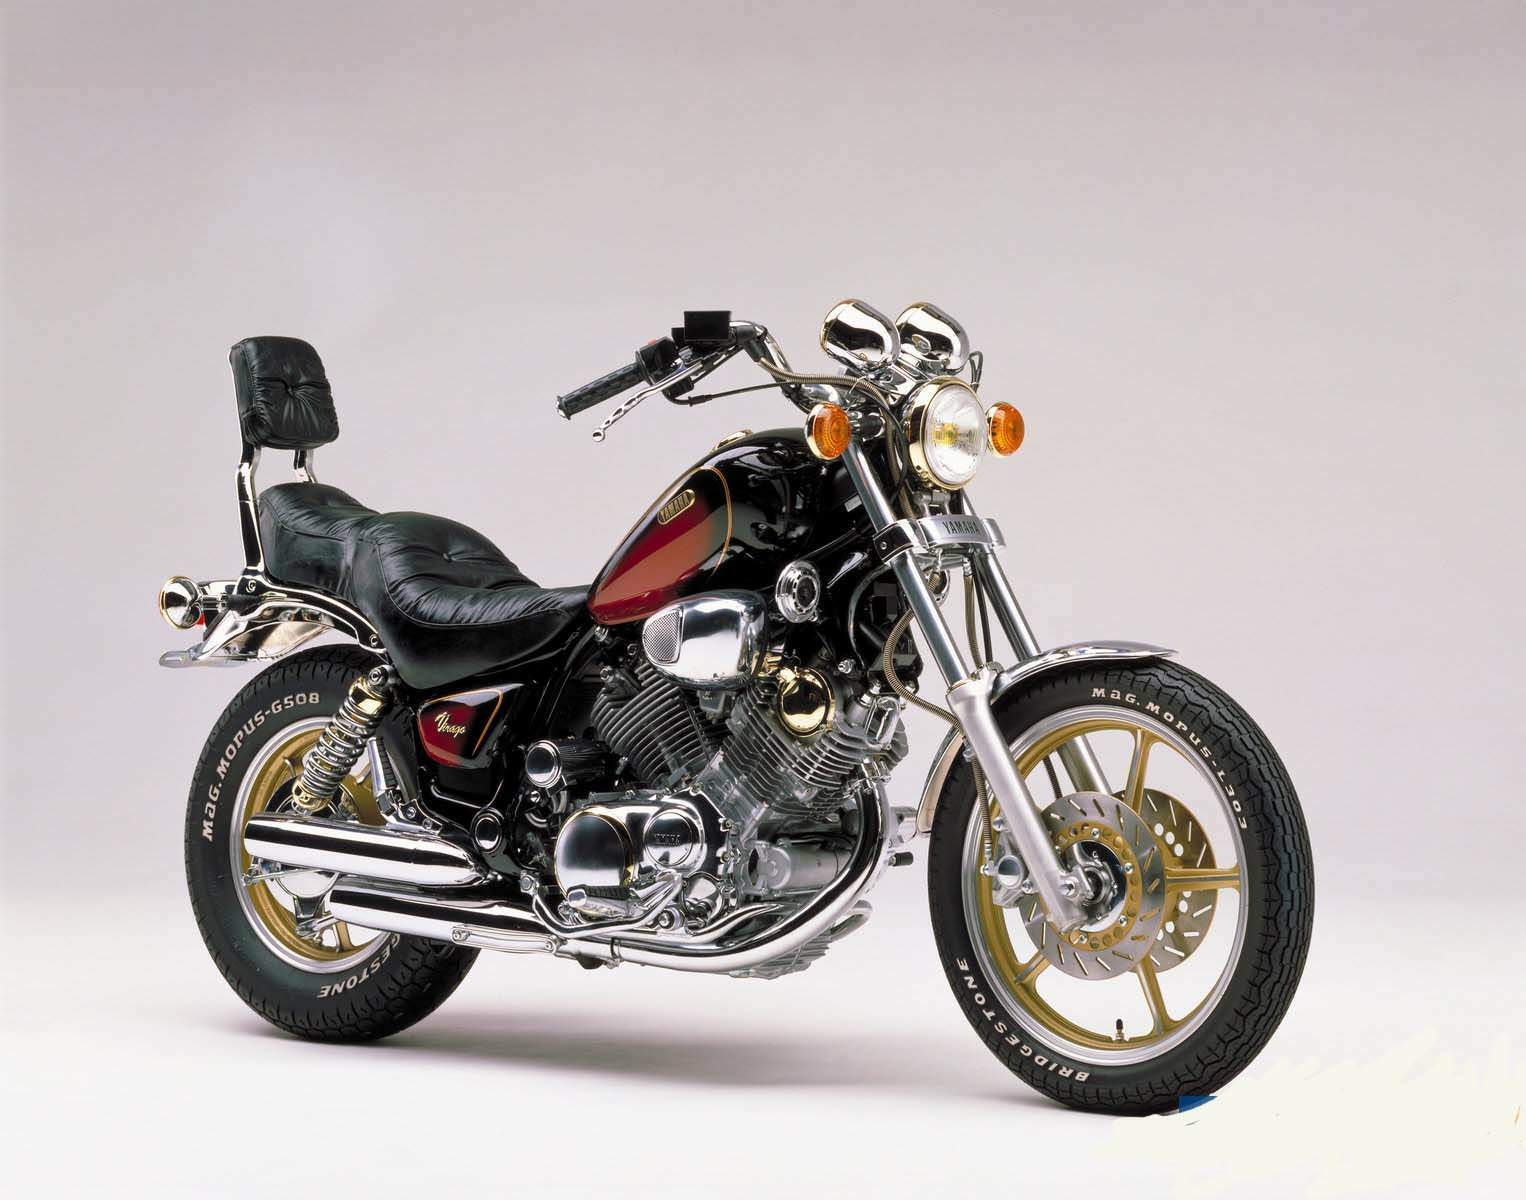 Yamaha XV1000就是當中的代表，街車的外型月擁有類似哈雷的高聳手把，還有加入小靠背的Vinago版本